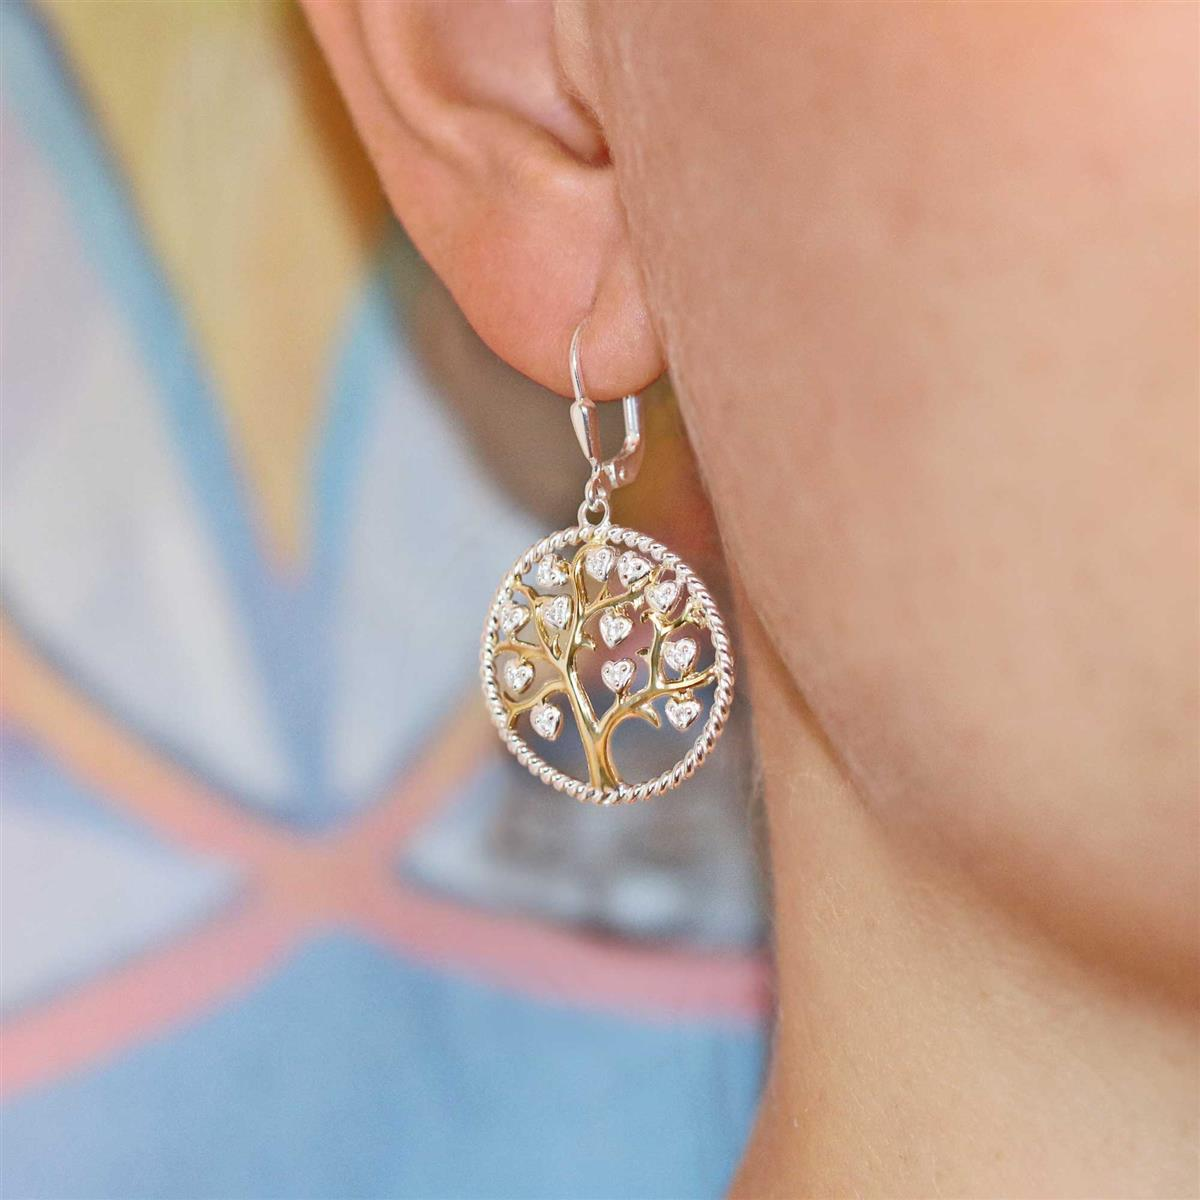 Ohrringe als Hänger Lebensbaum im gedrehten Ring mit Zirkoniasteinen herzförmig teilvergoldet Echt Silber 925